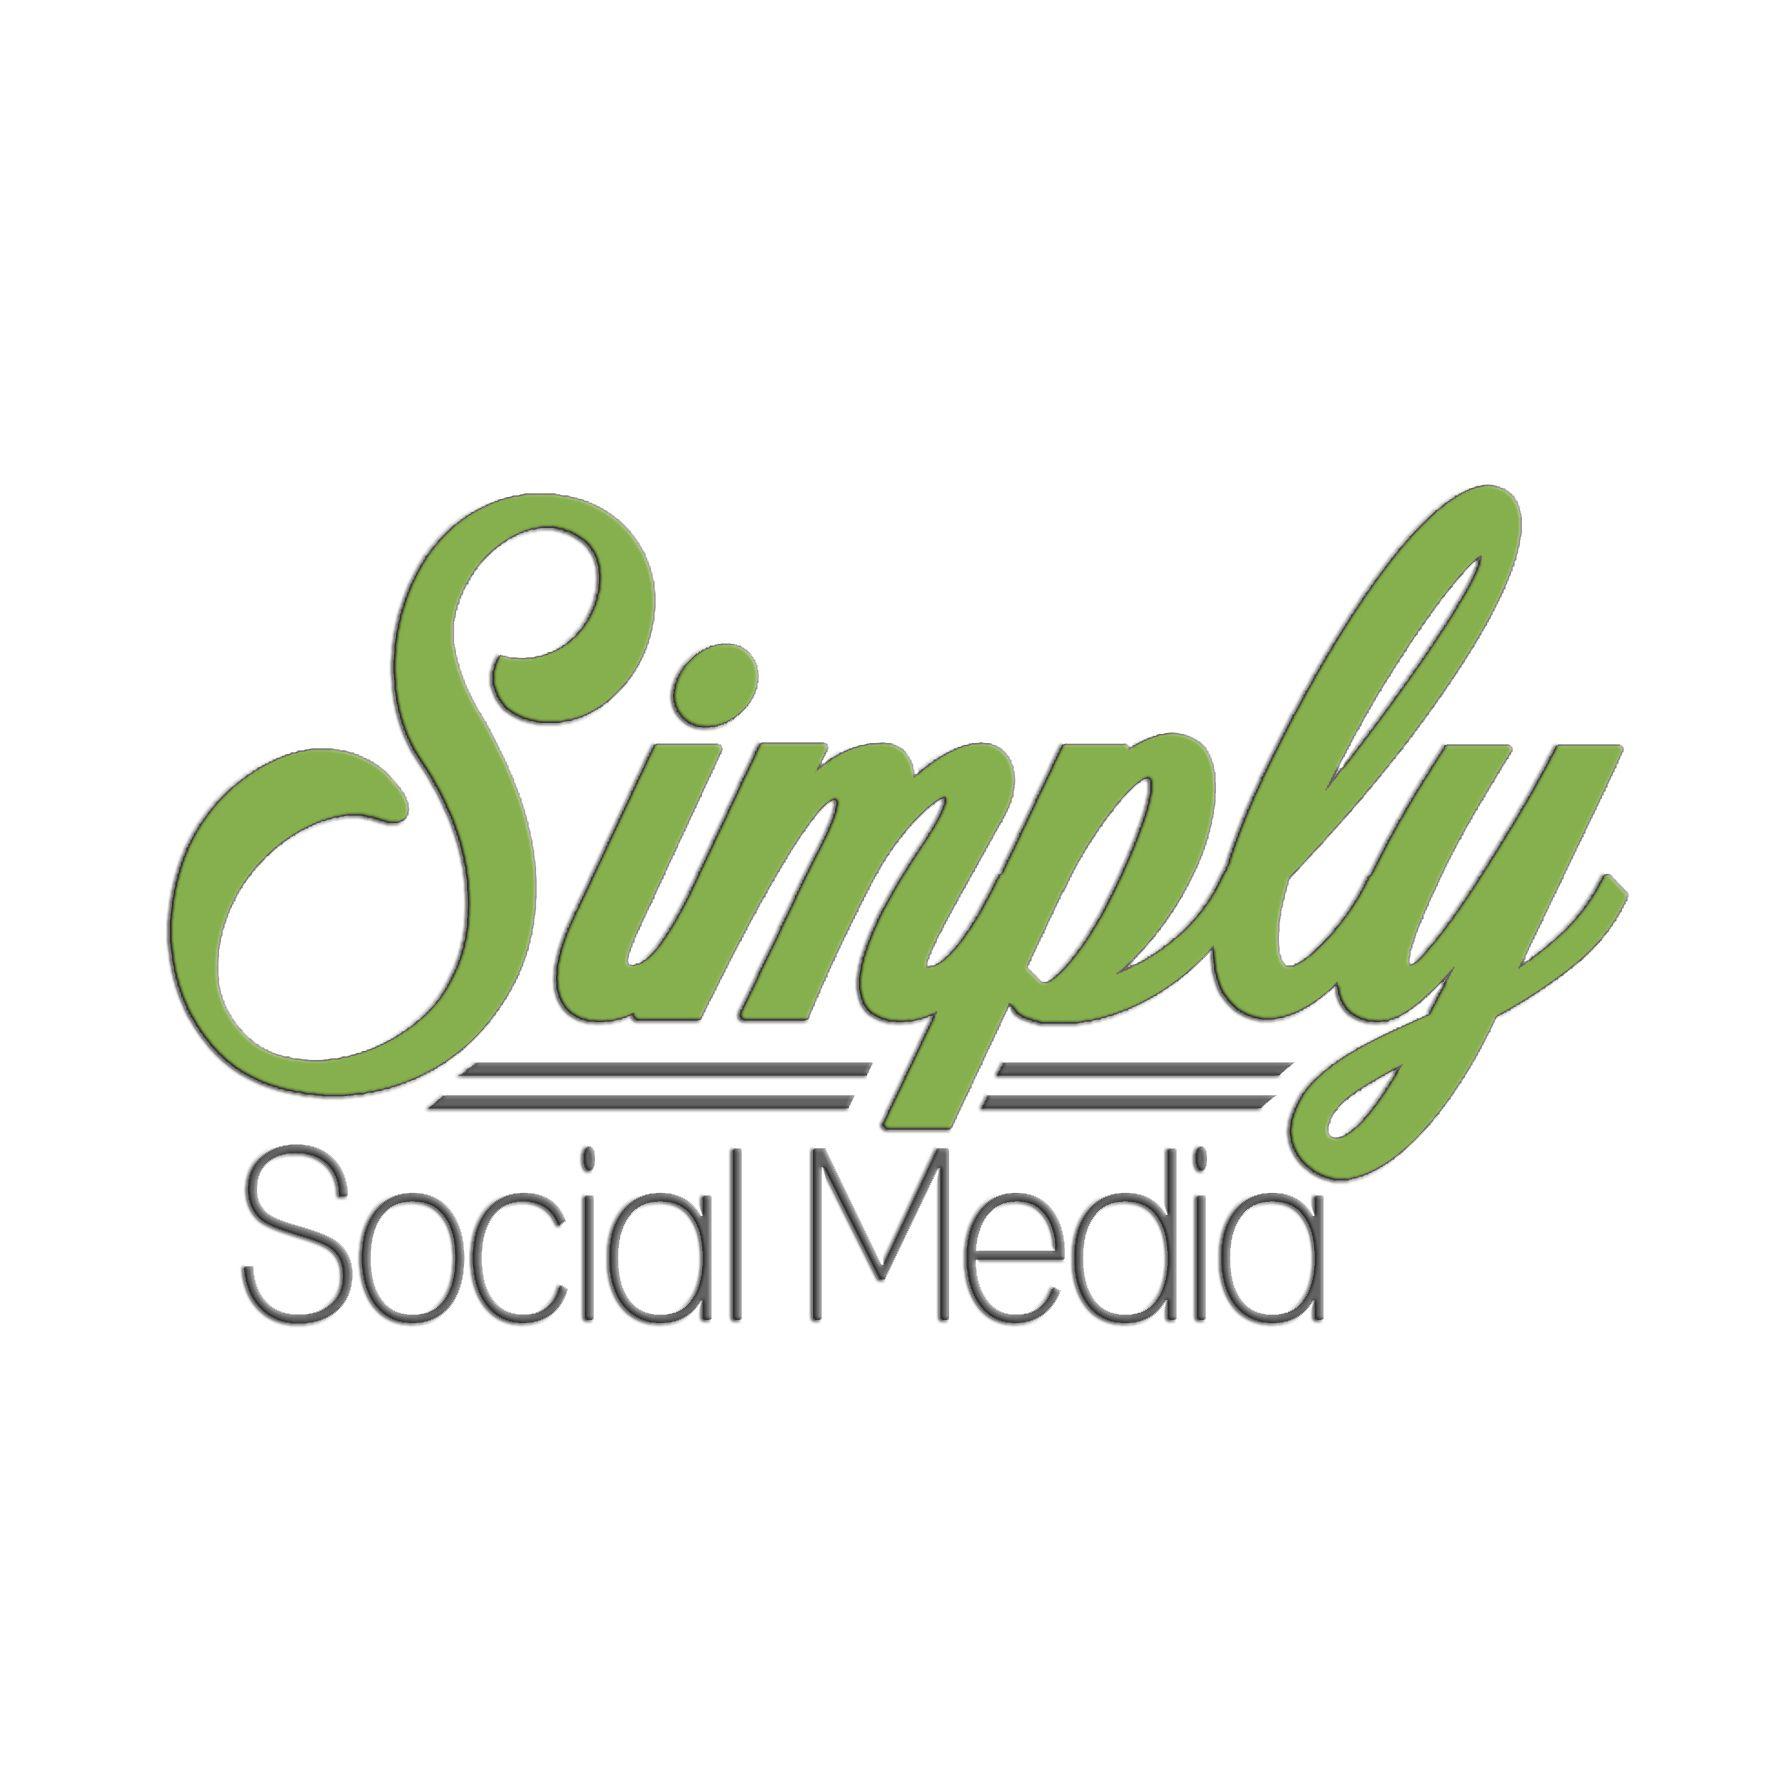 Green Social Media Logo - Brand Assets